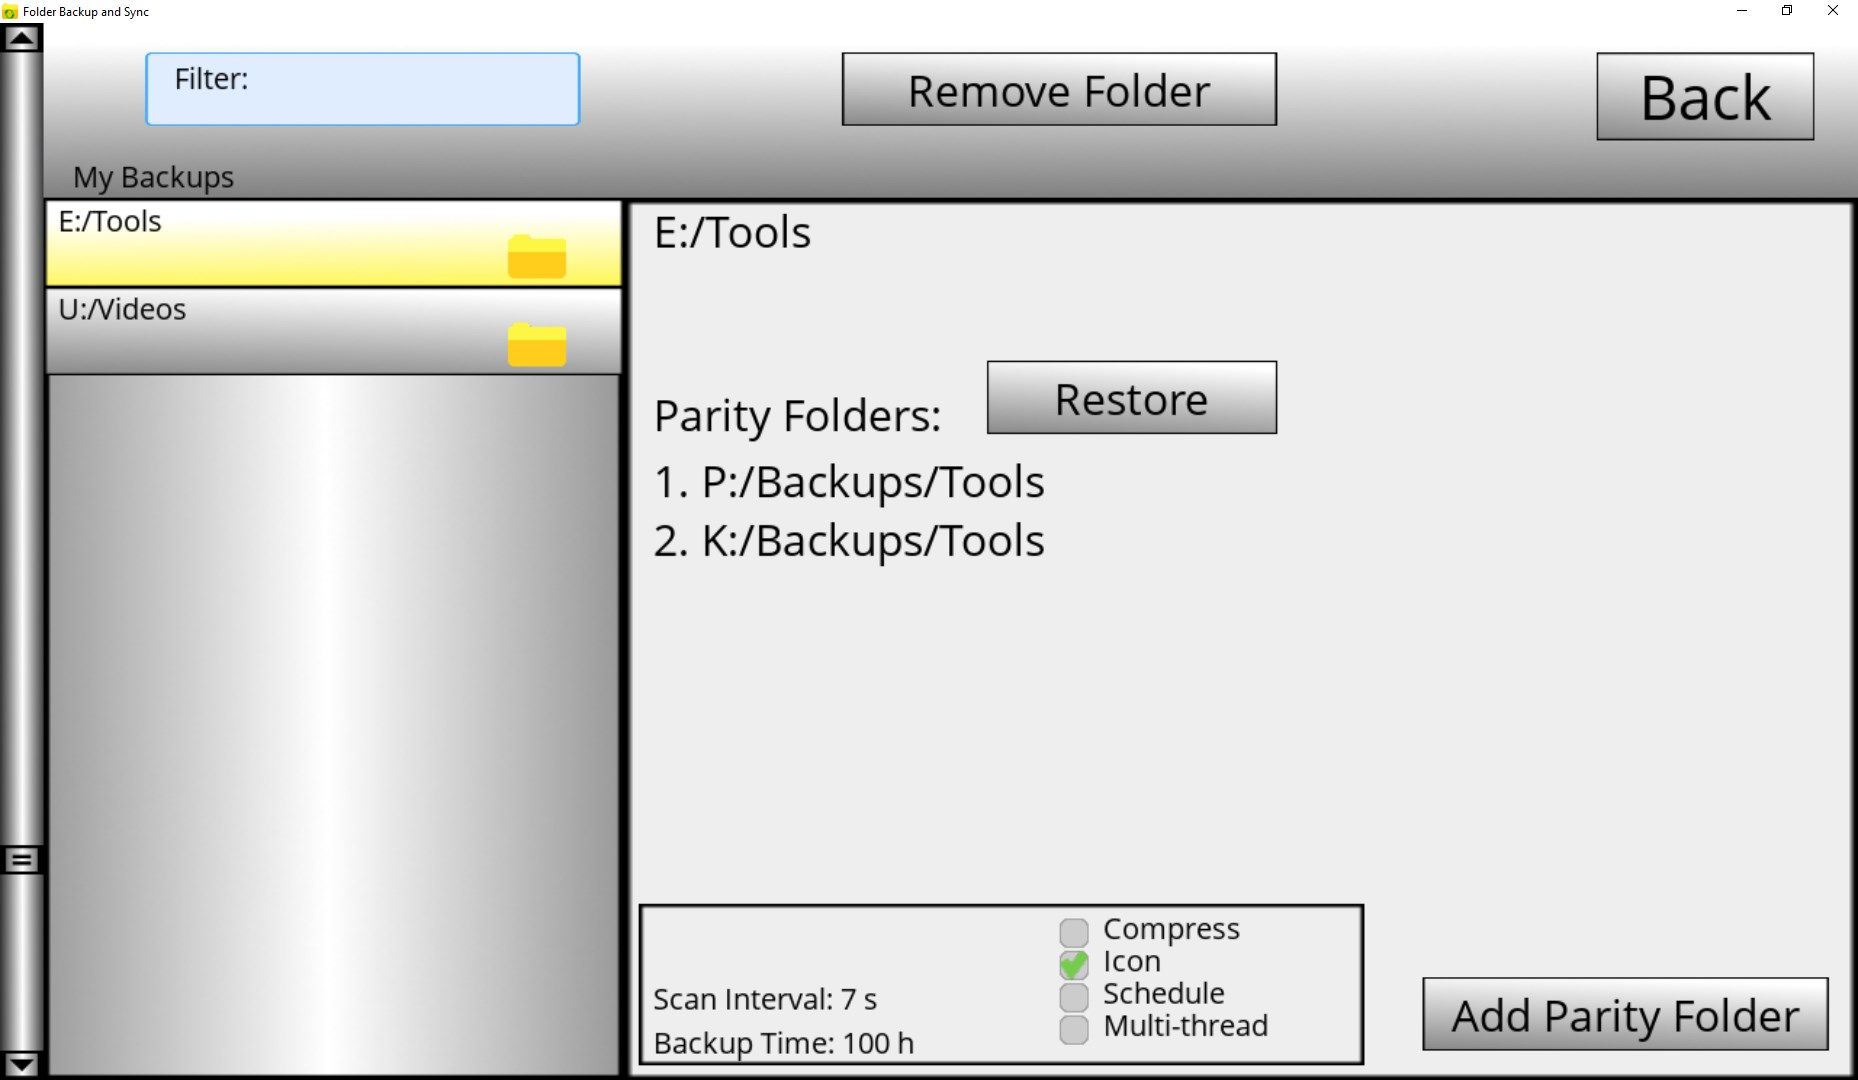 Folder Backup and Sync